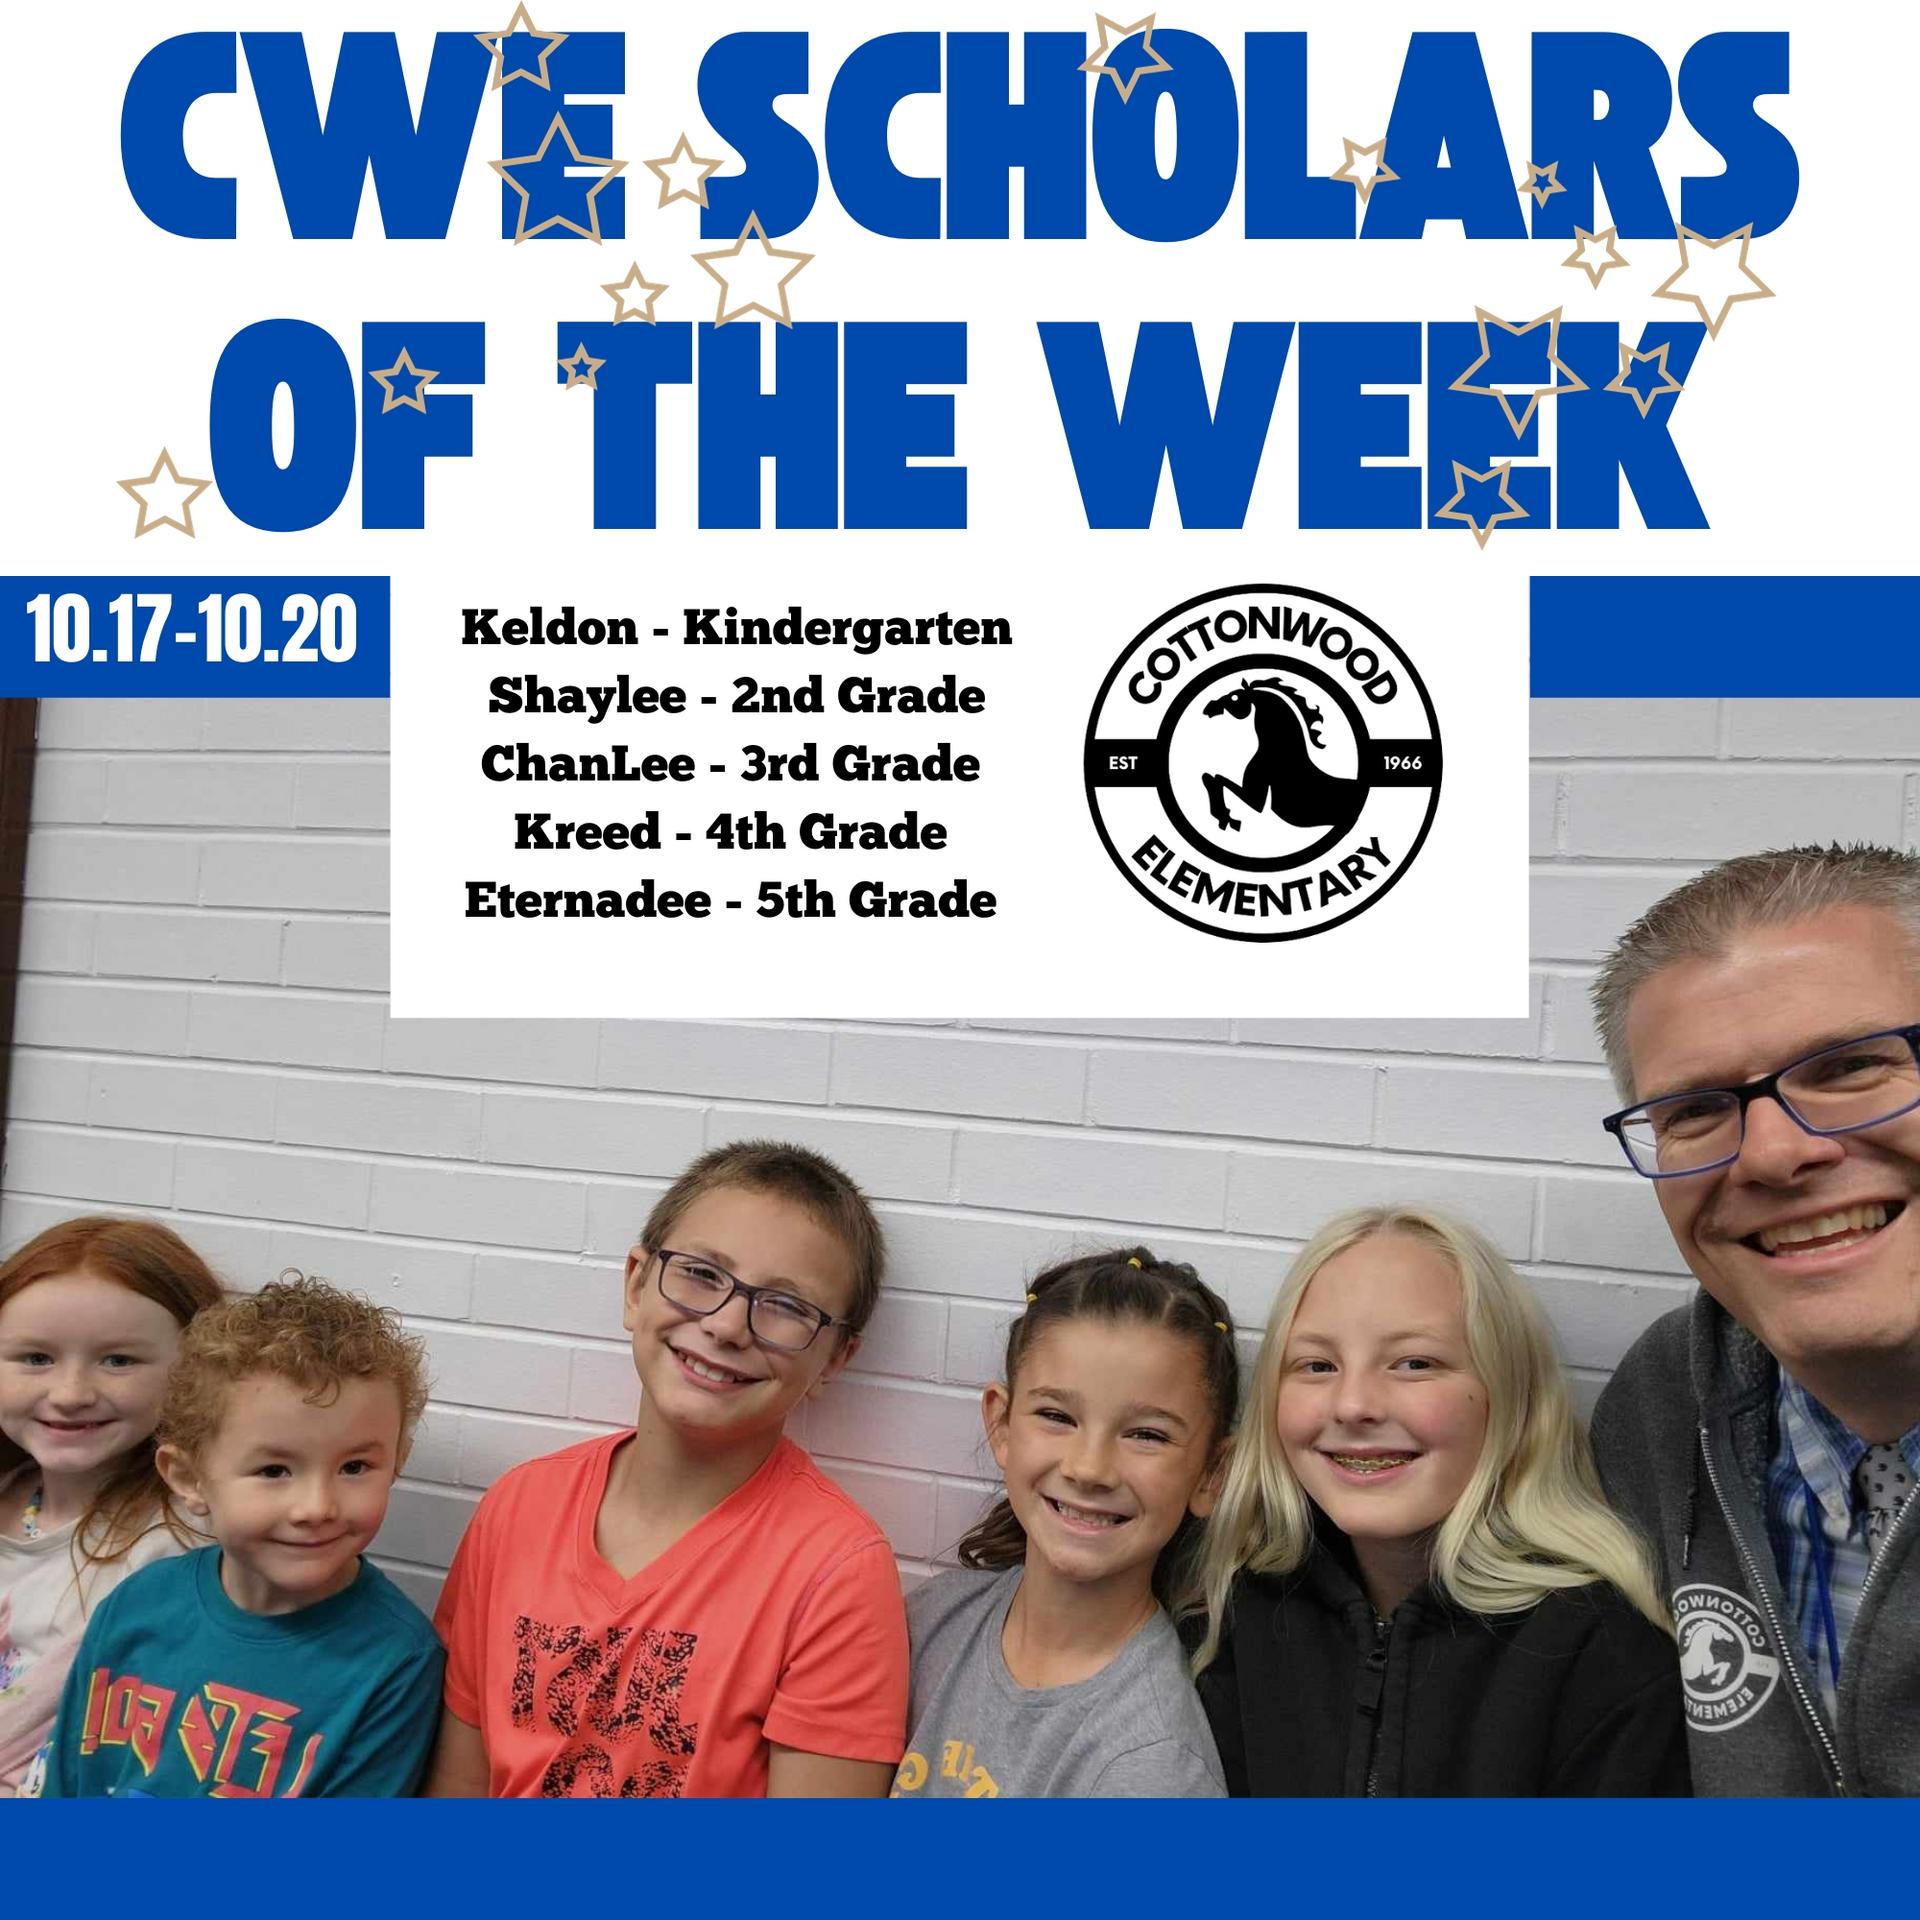 CWE-Scholars-of-the-Week-10.17-to-10.20.jpg